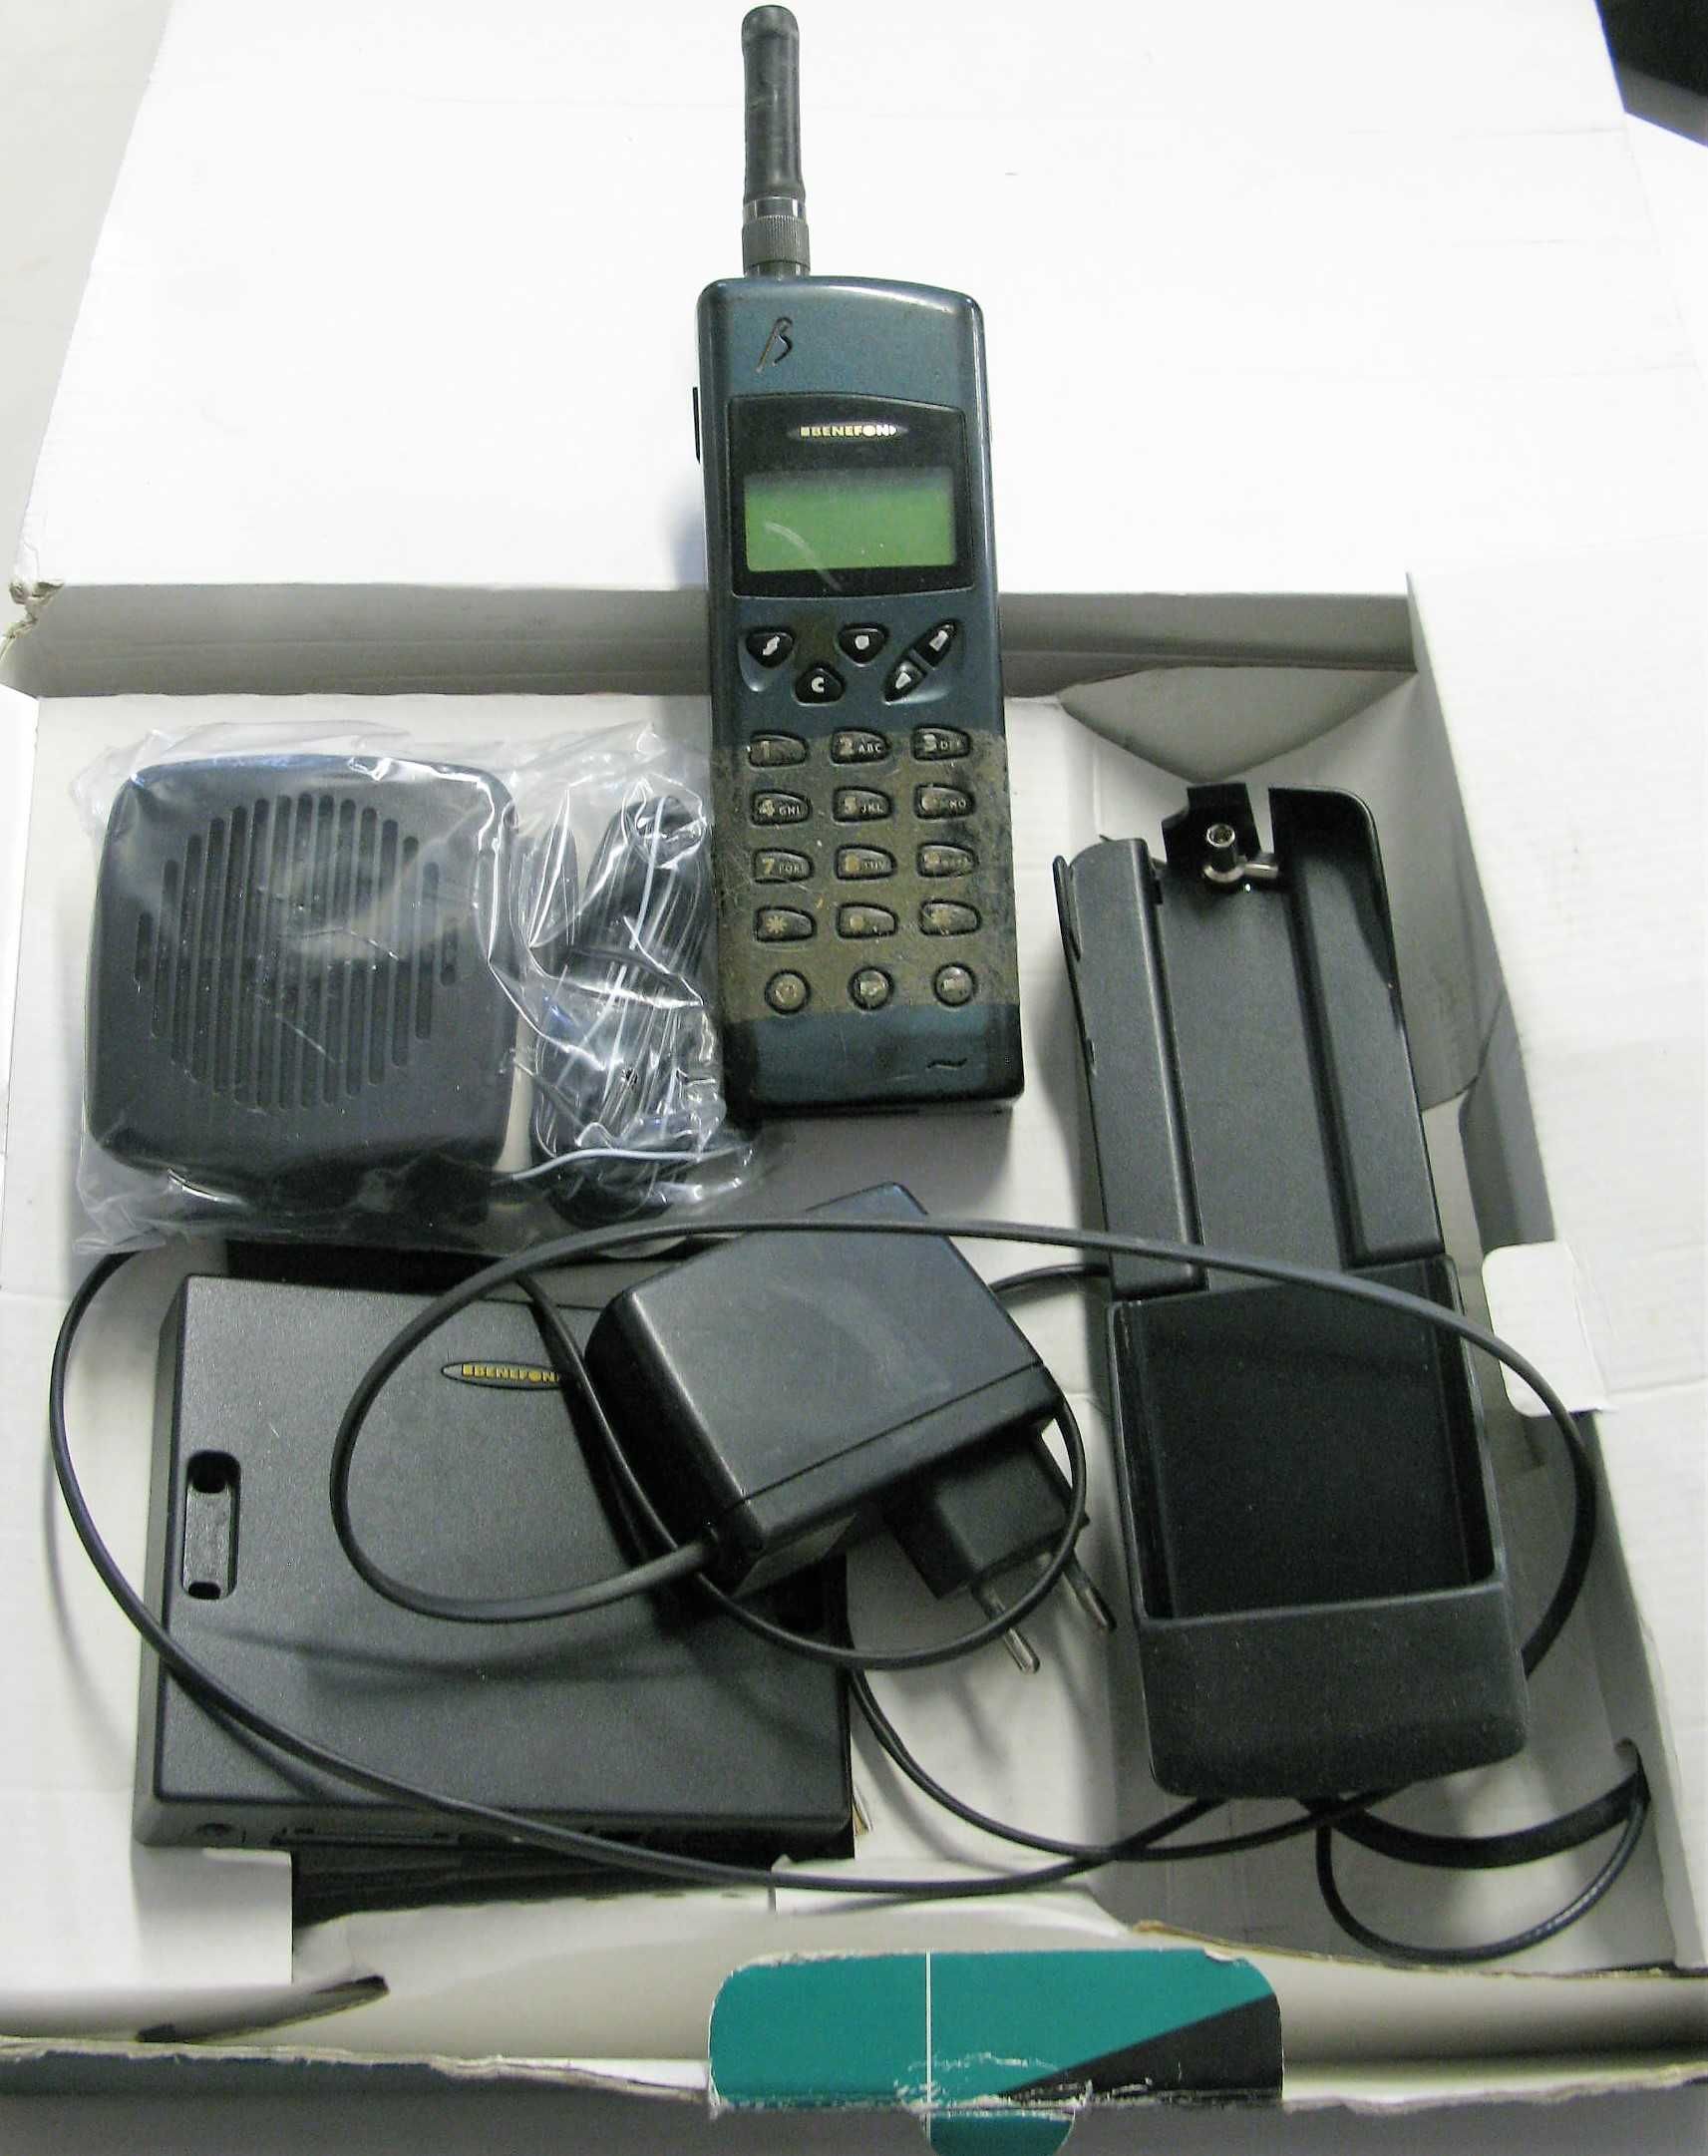 Benefon telefon cegła + ZE3205 zestaw samochodowy HF Car Kit